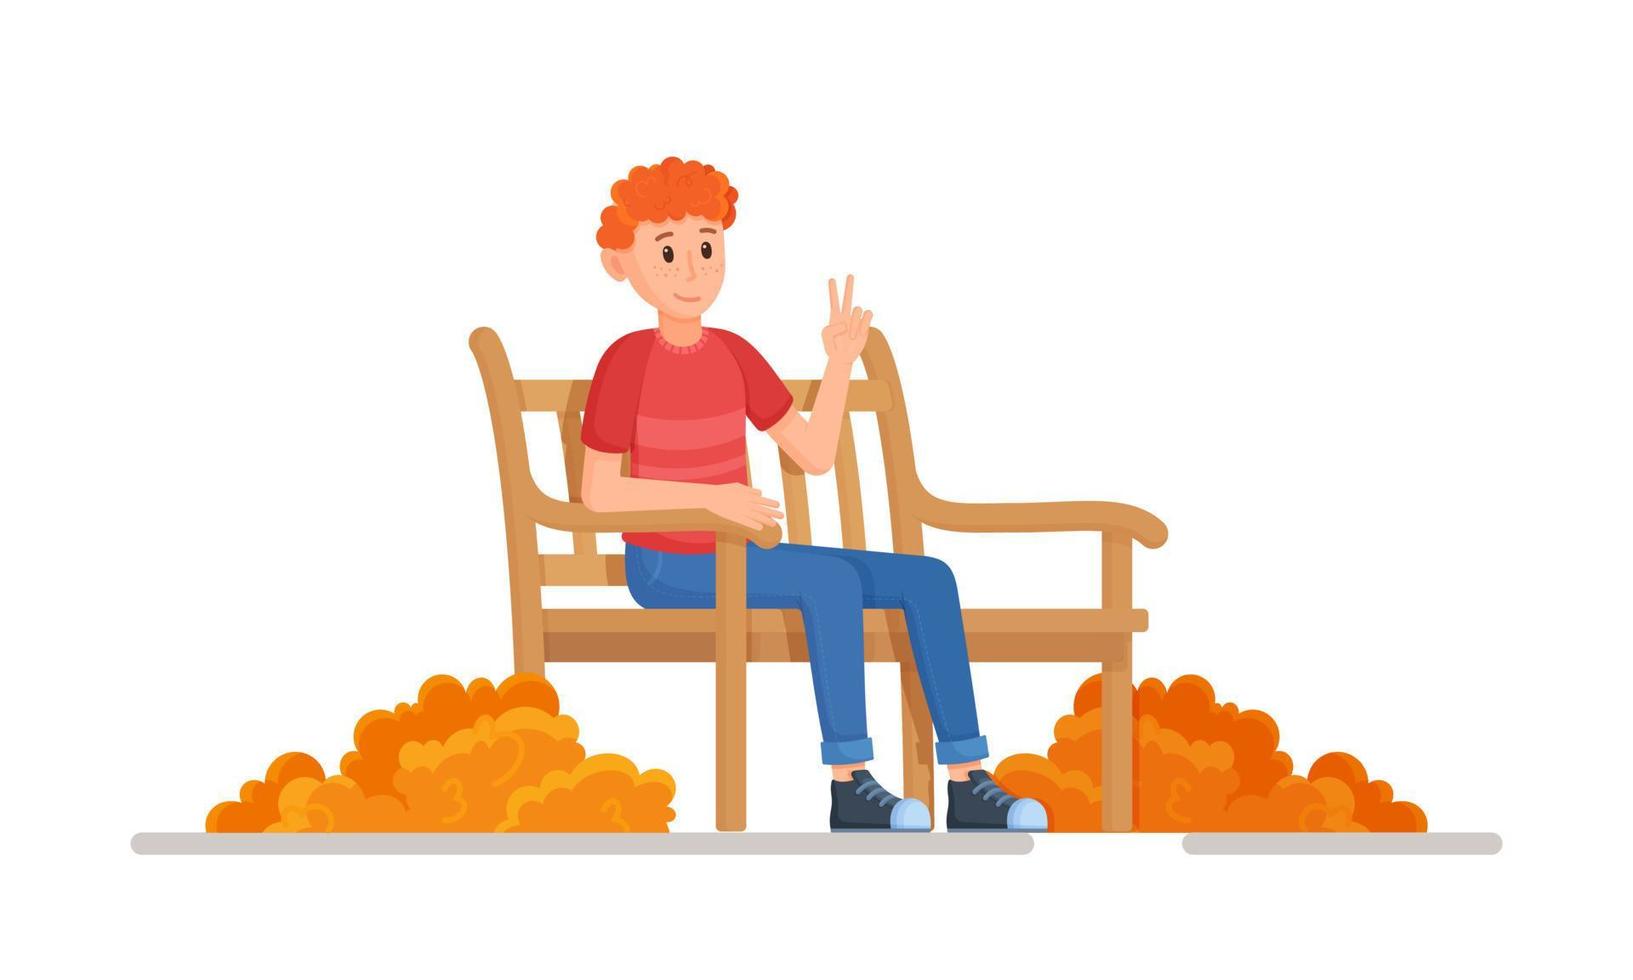 ilustração em vetor de um personagem sentado em um banco no outono. conceito de um jovem relaxante durante uma queda de folhas de outono.